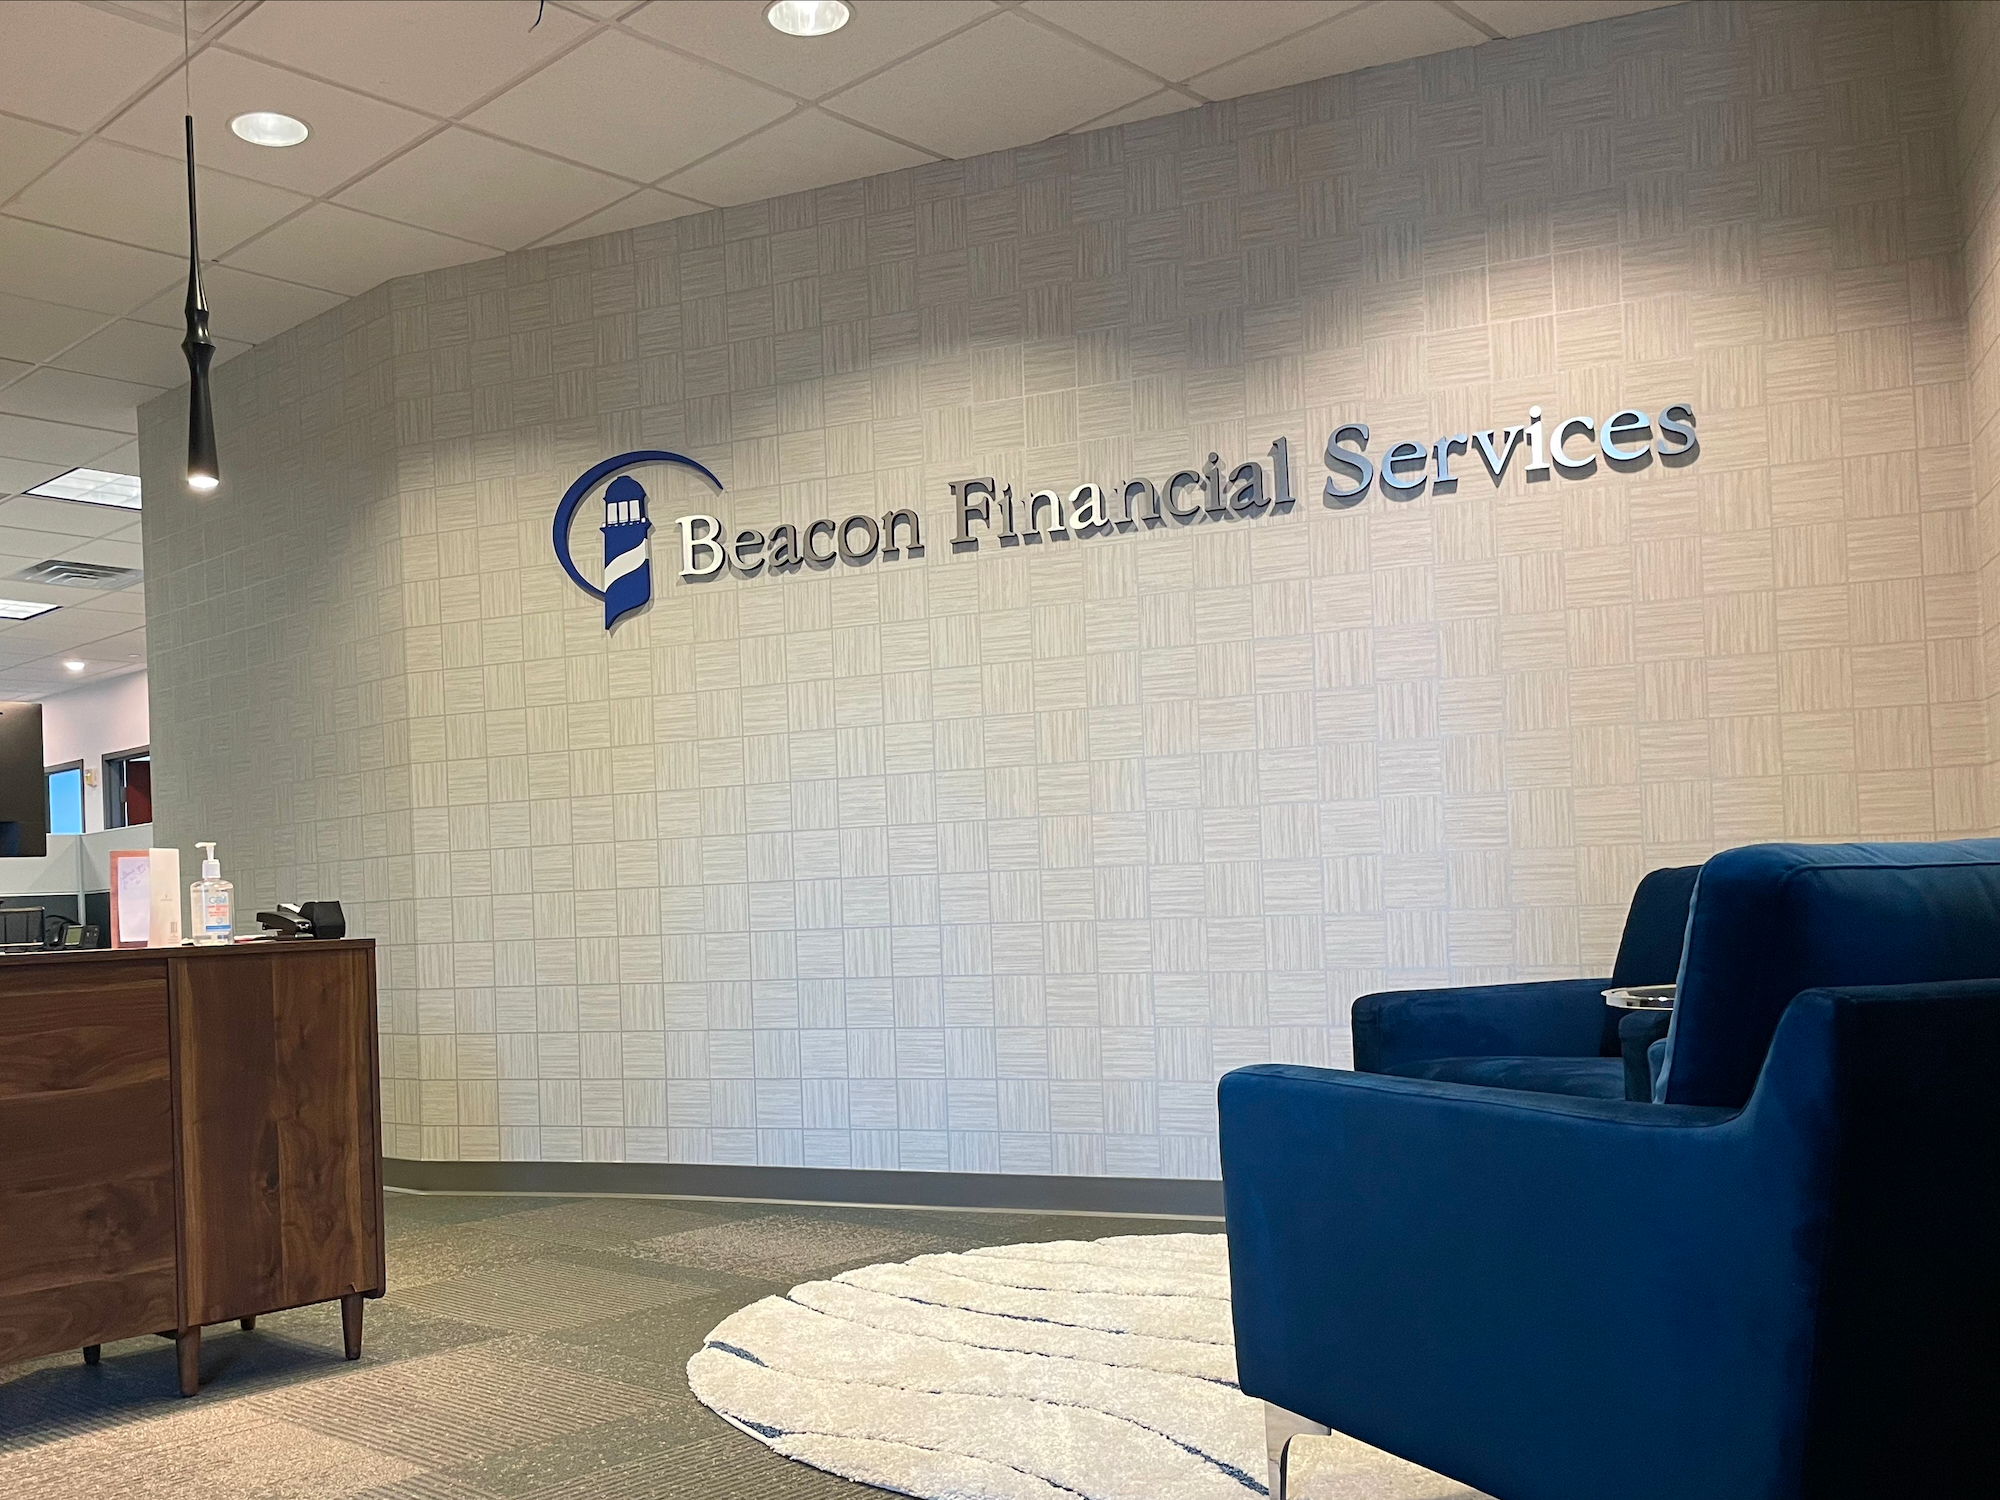 Beacon Financial Services : Reception 